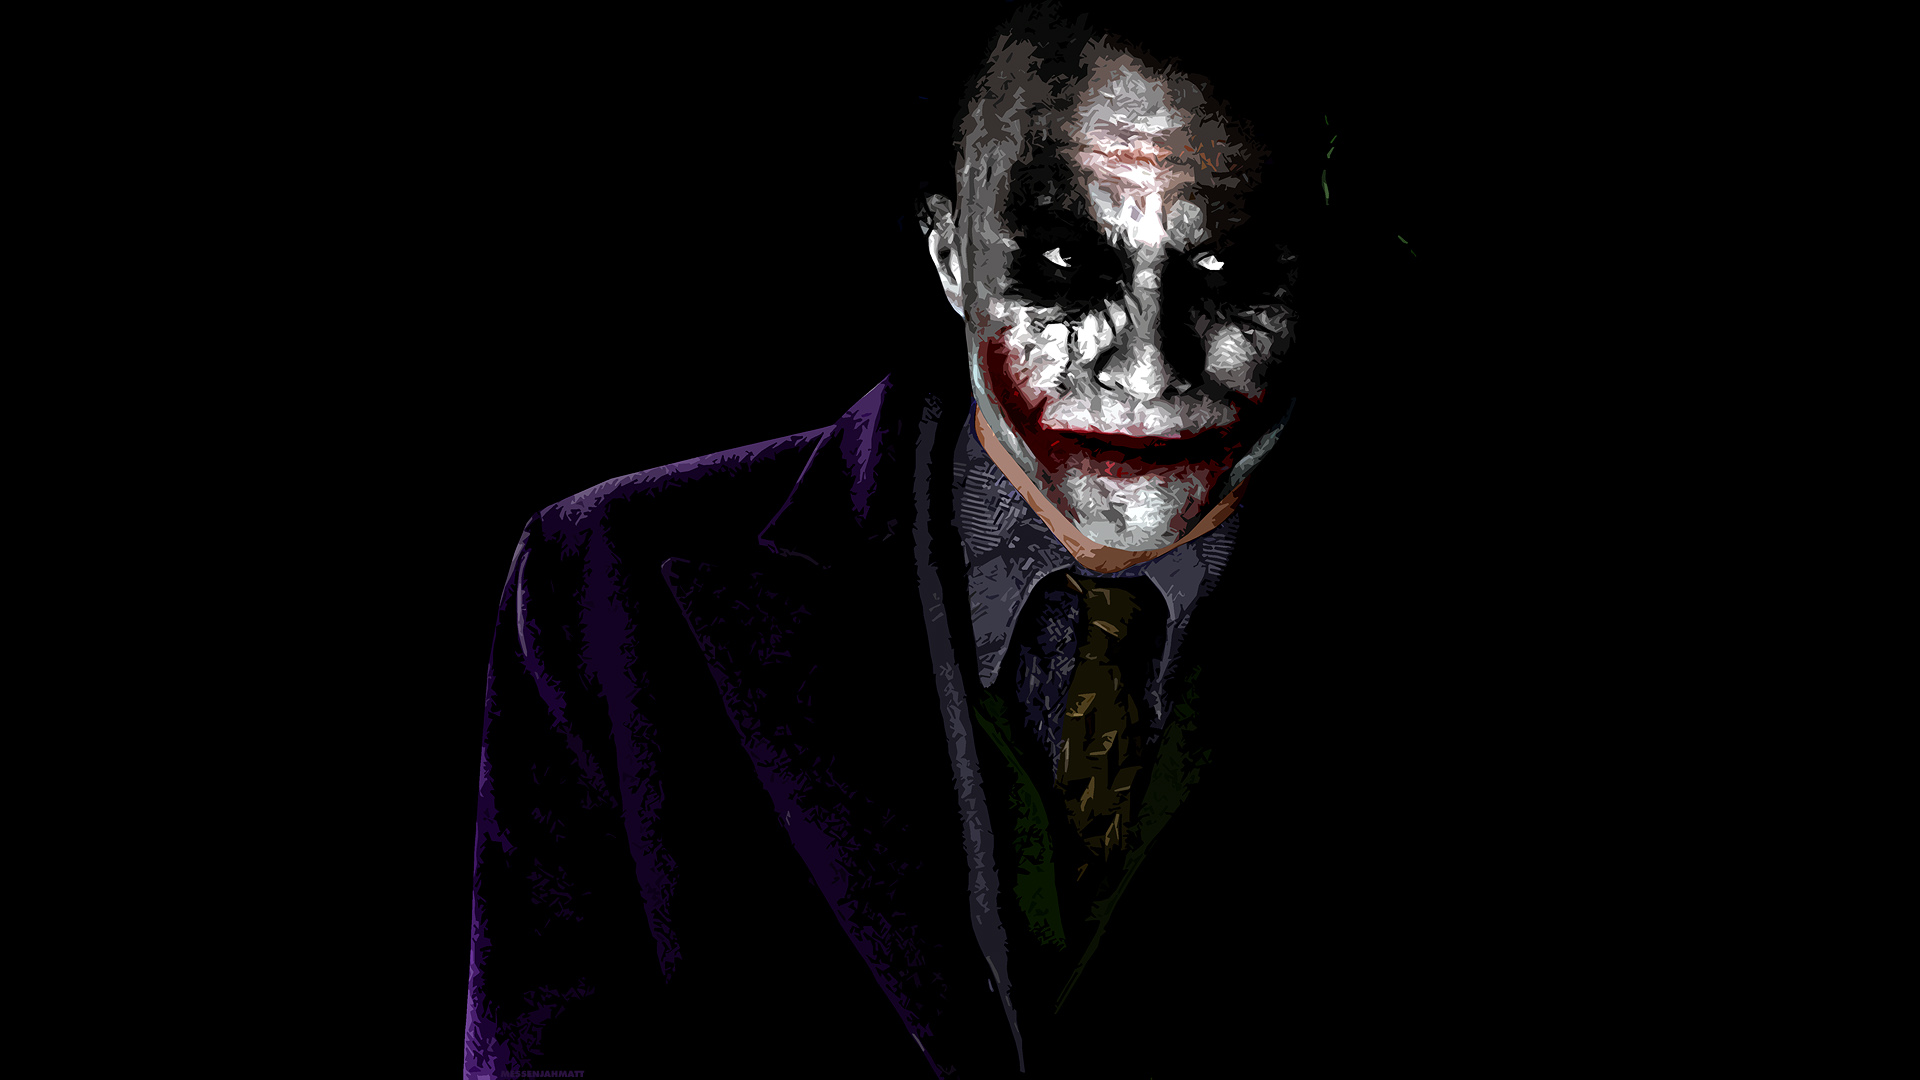 Joker Hd Wallpapers 1080P   HD Wallpapers Pretty